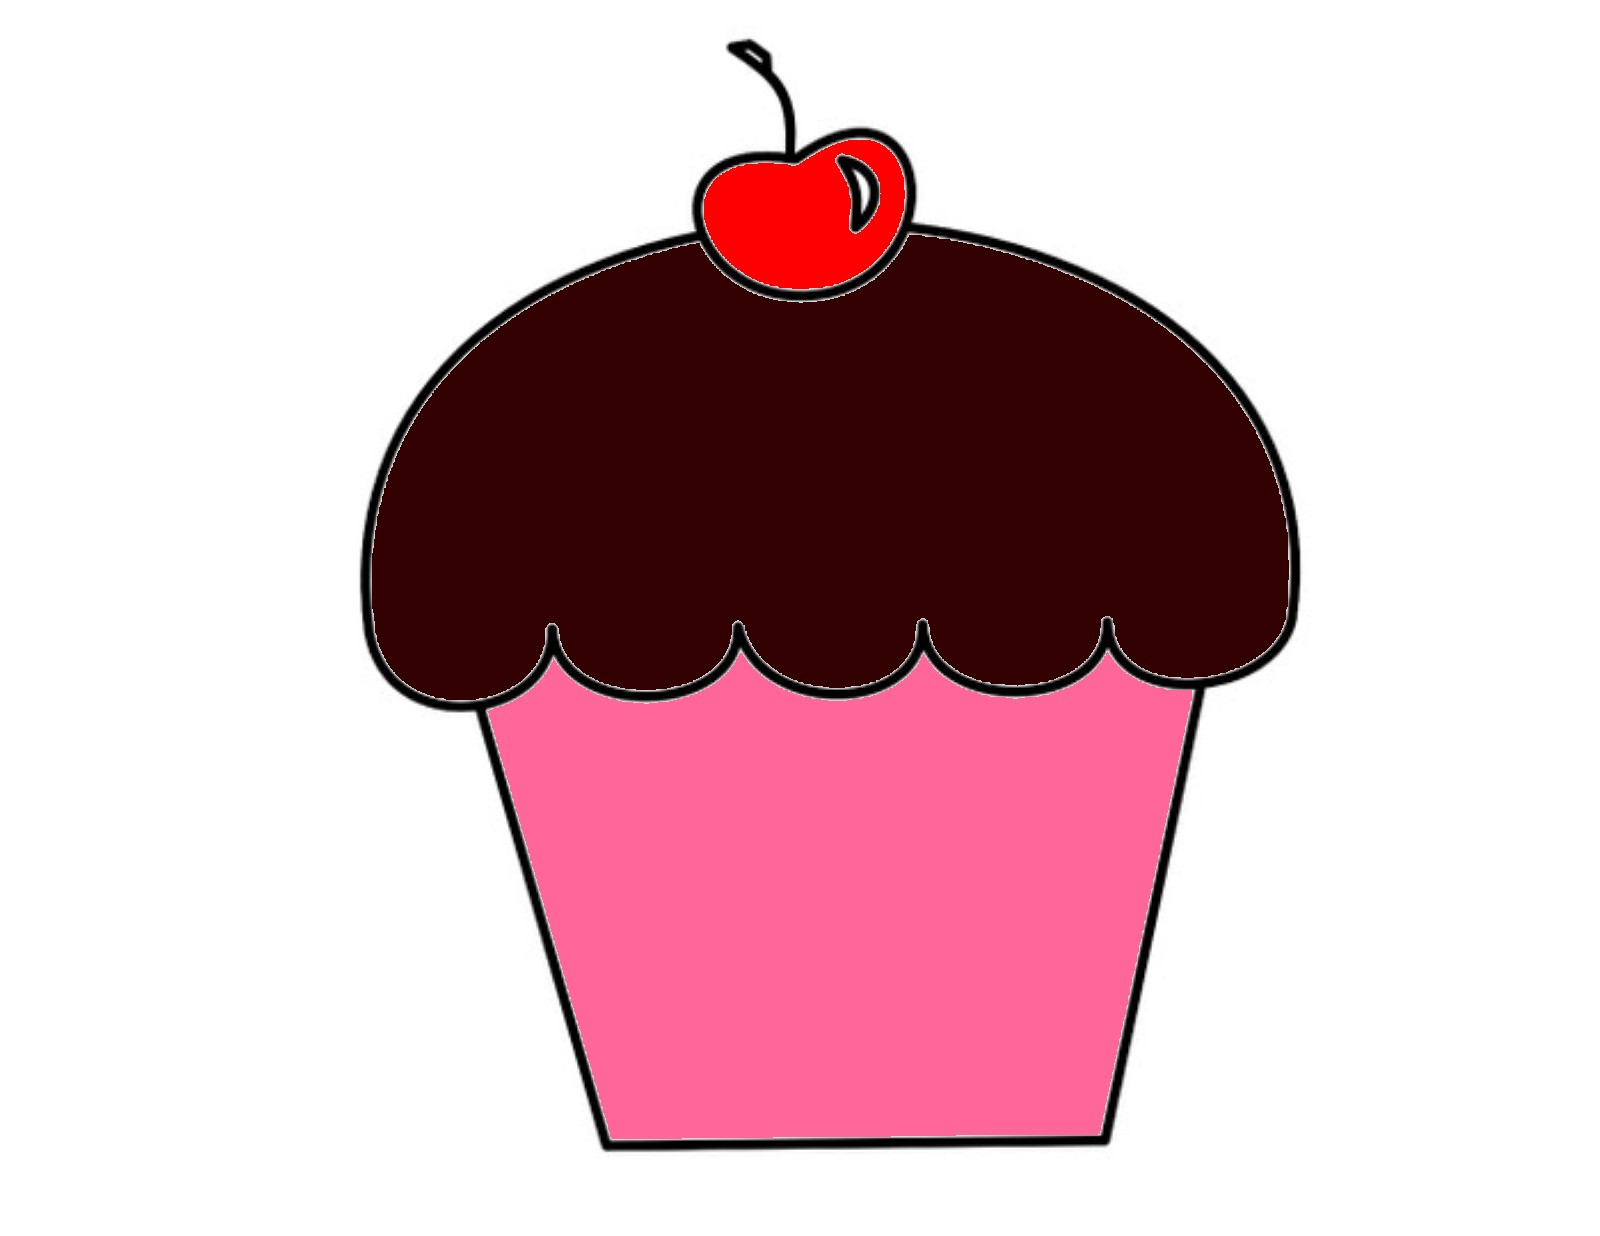 Cartoon Cupcake Images - Desktop Backgrounds